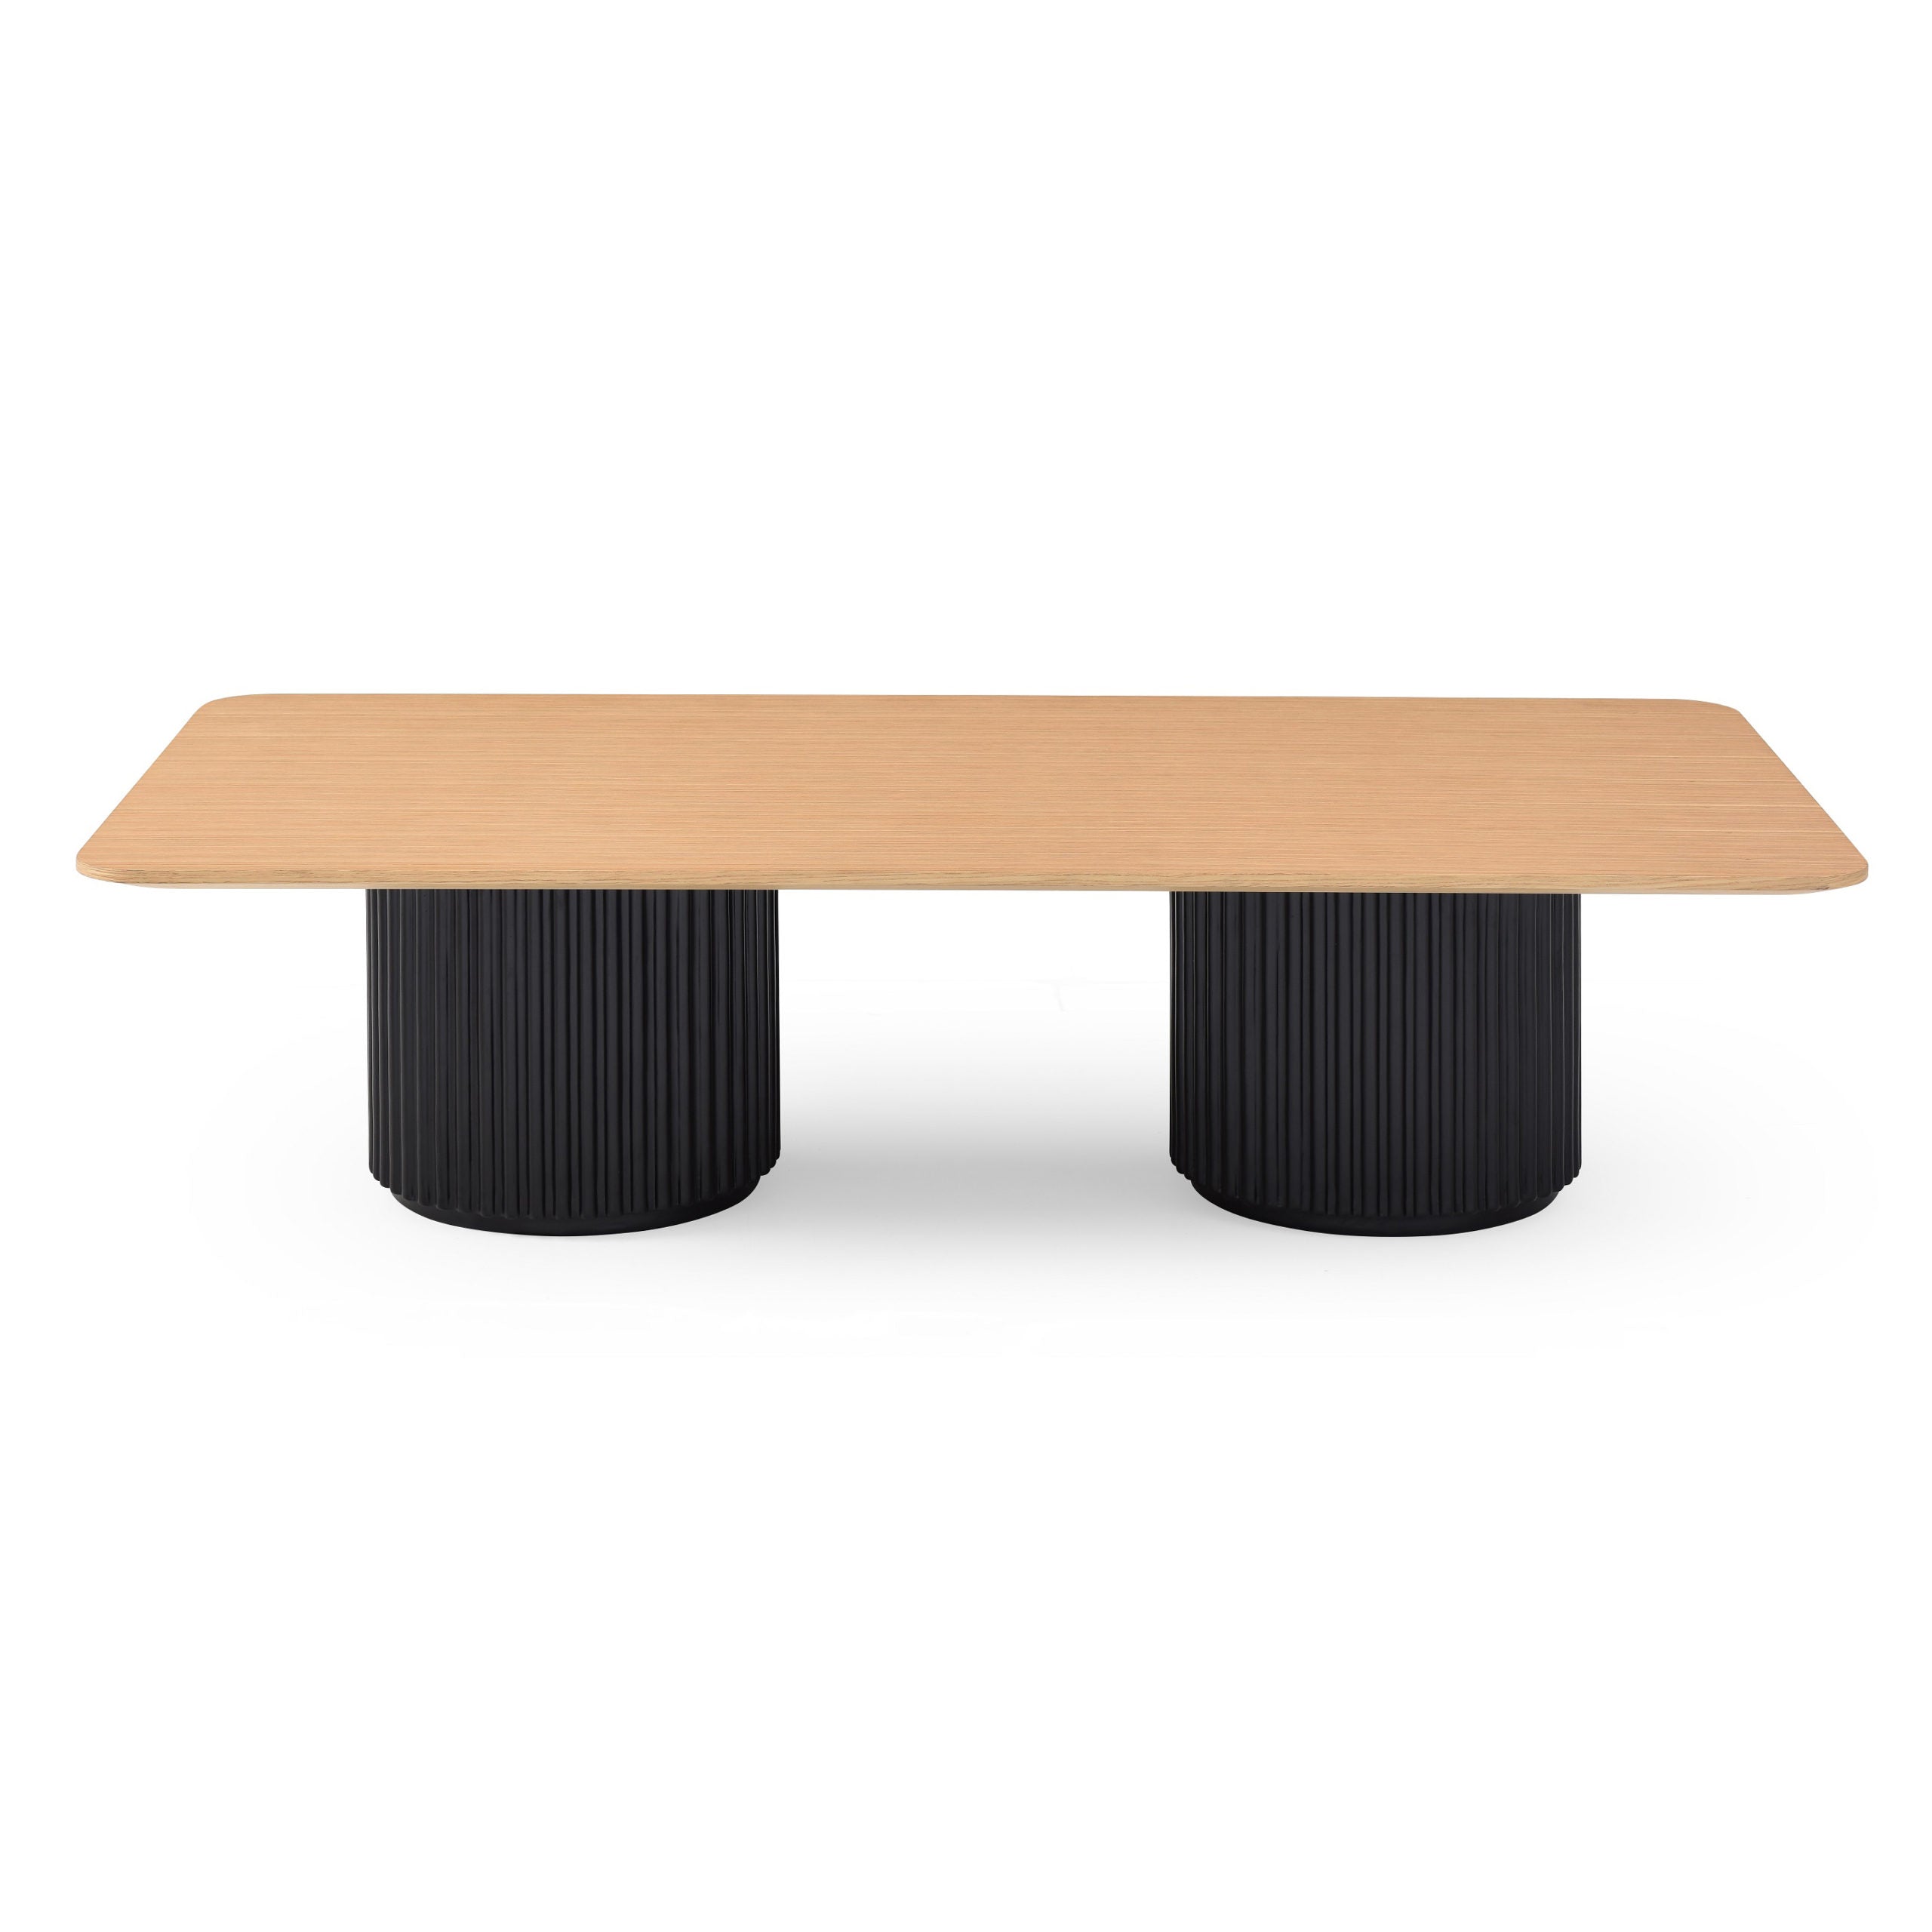 Lantine Coffee Table - Double Pedestal - Ash/Black